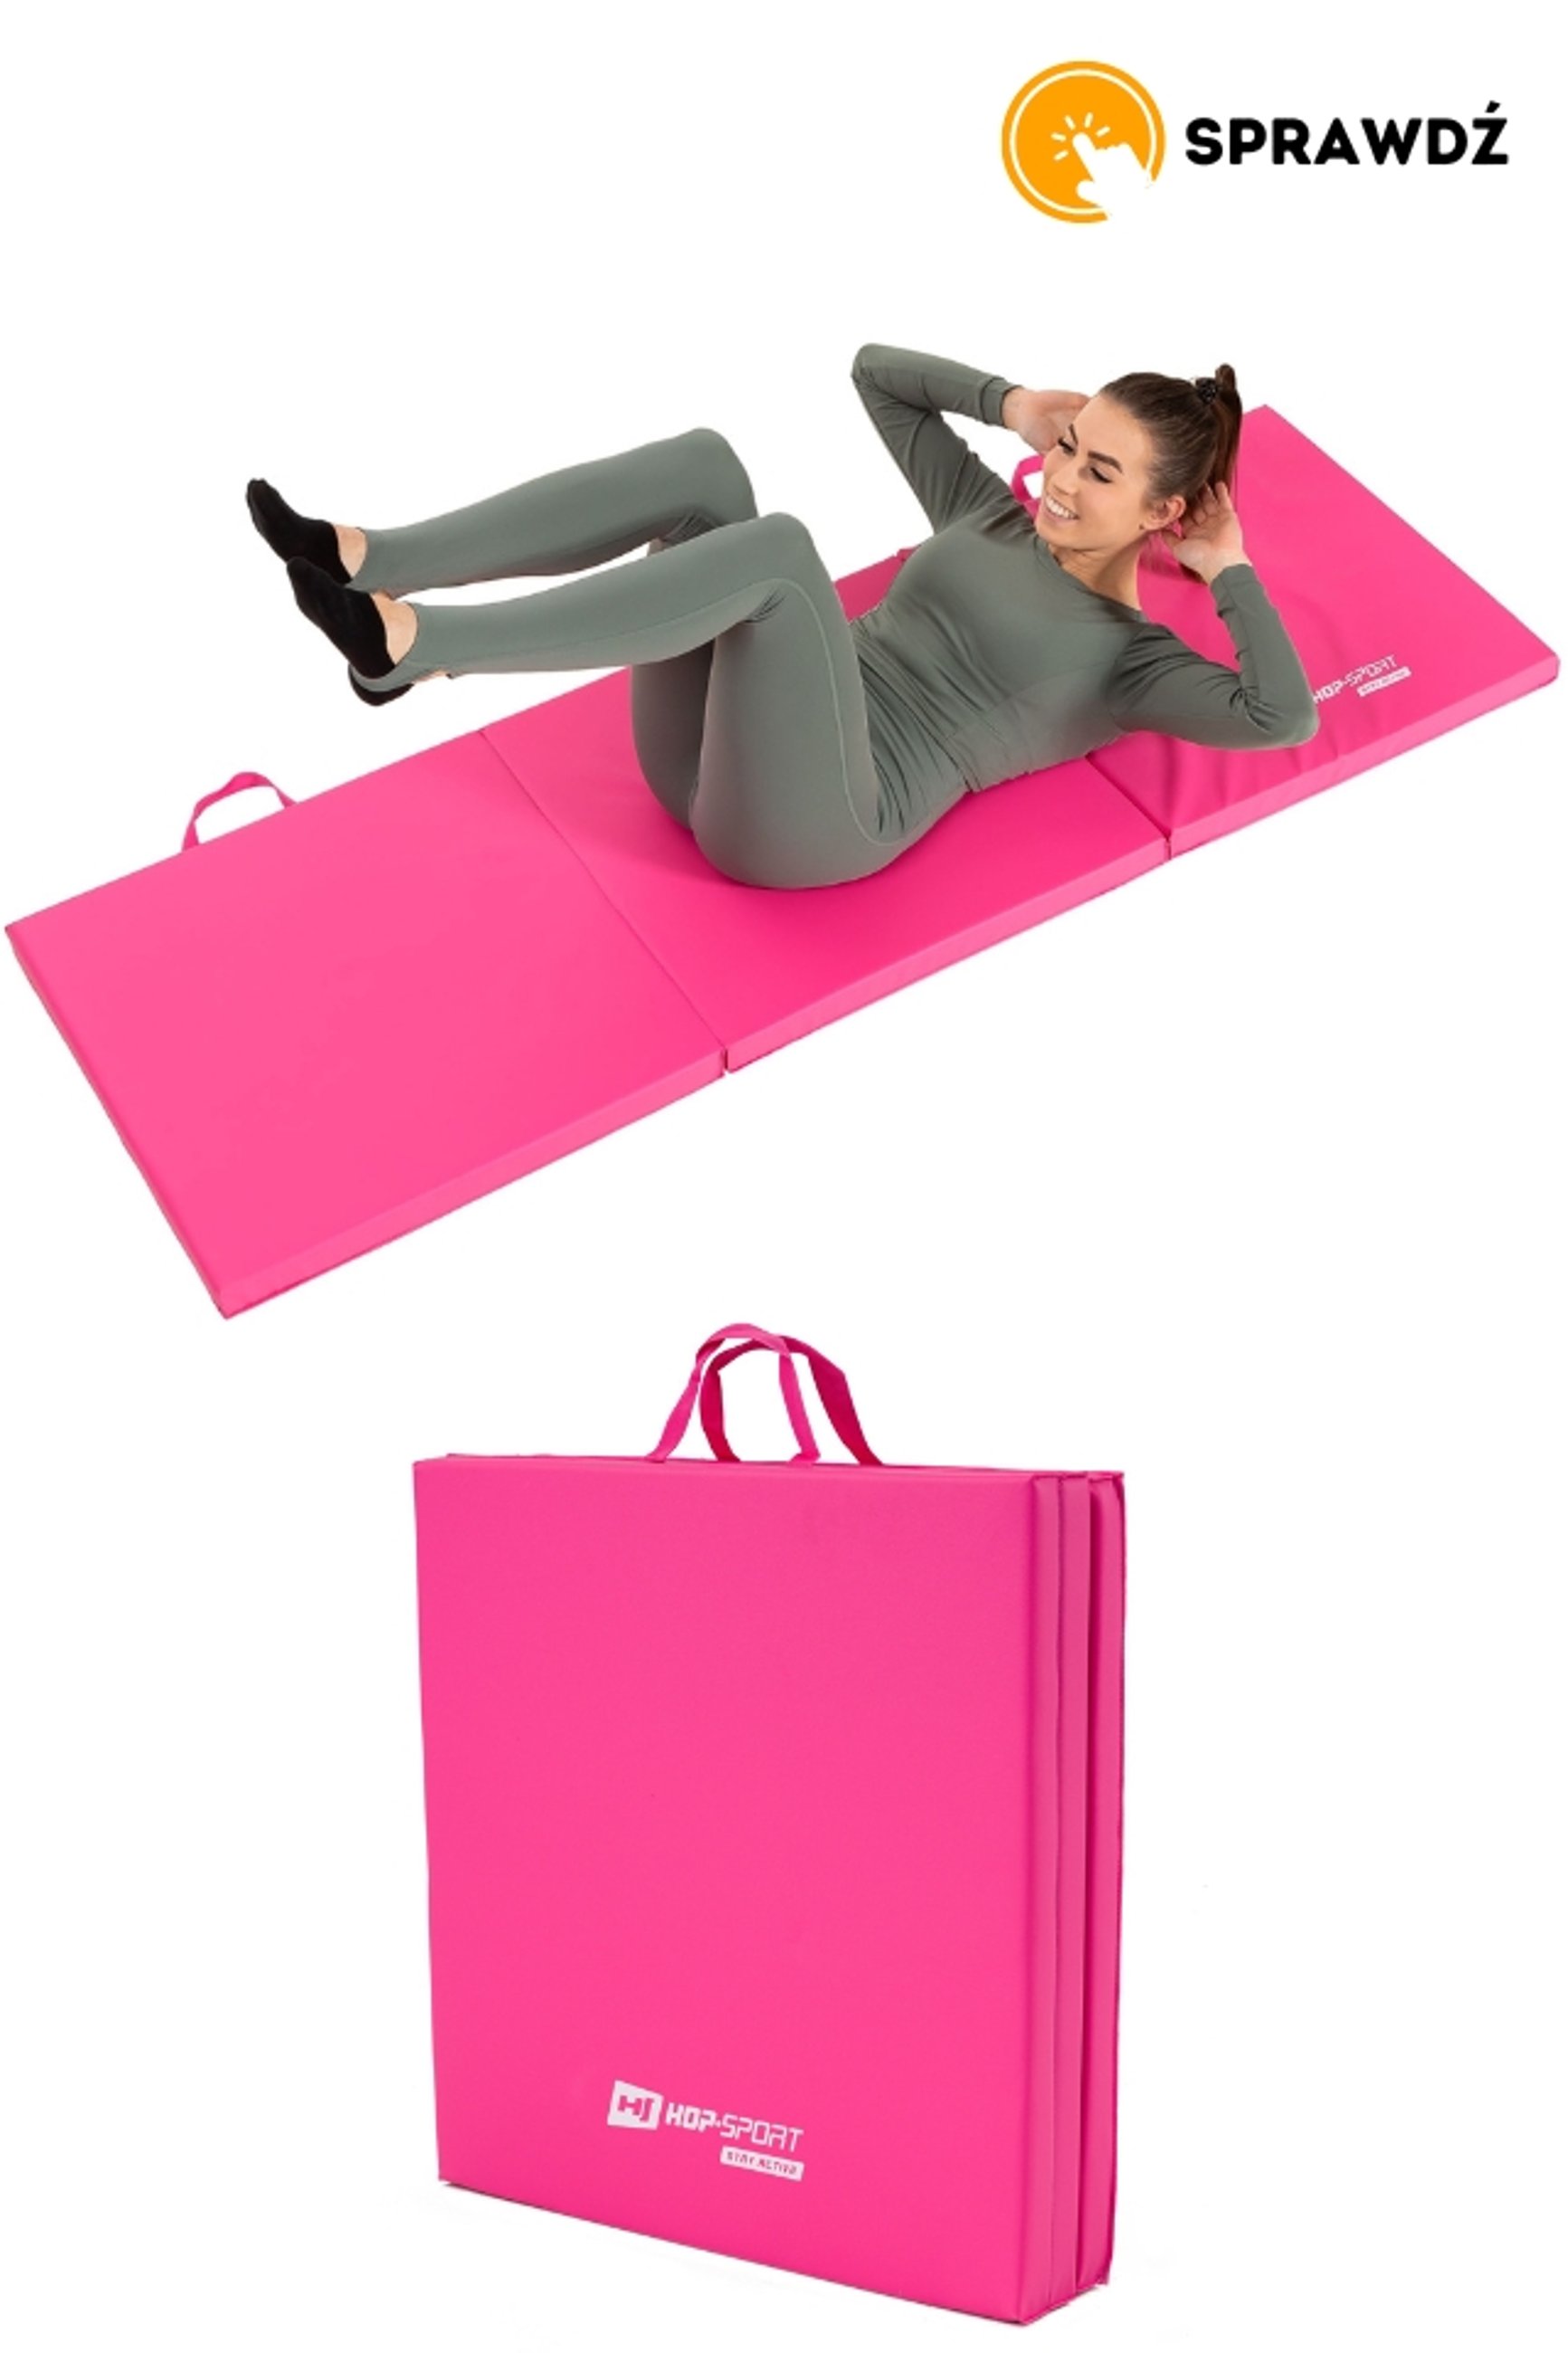 modelka ćwicząca na materacu gimnastycznym różowym marki Hop-Sport